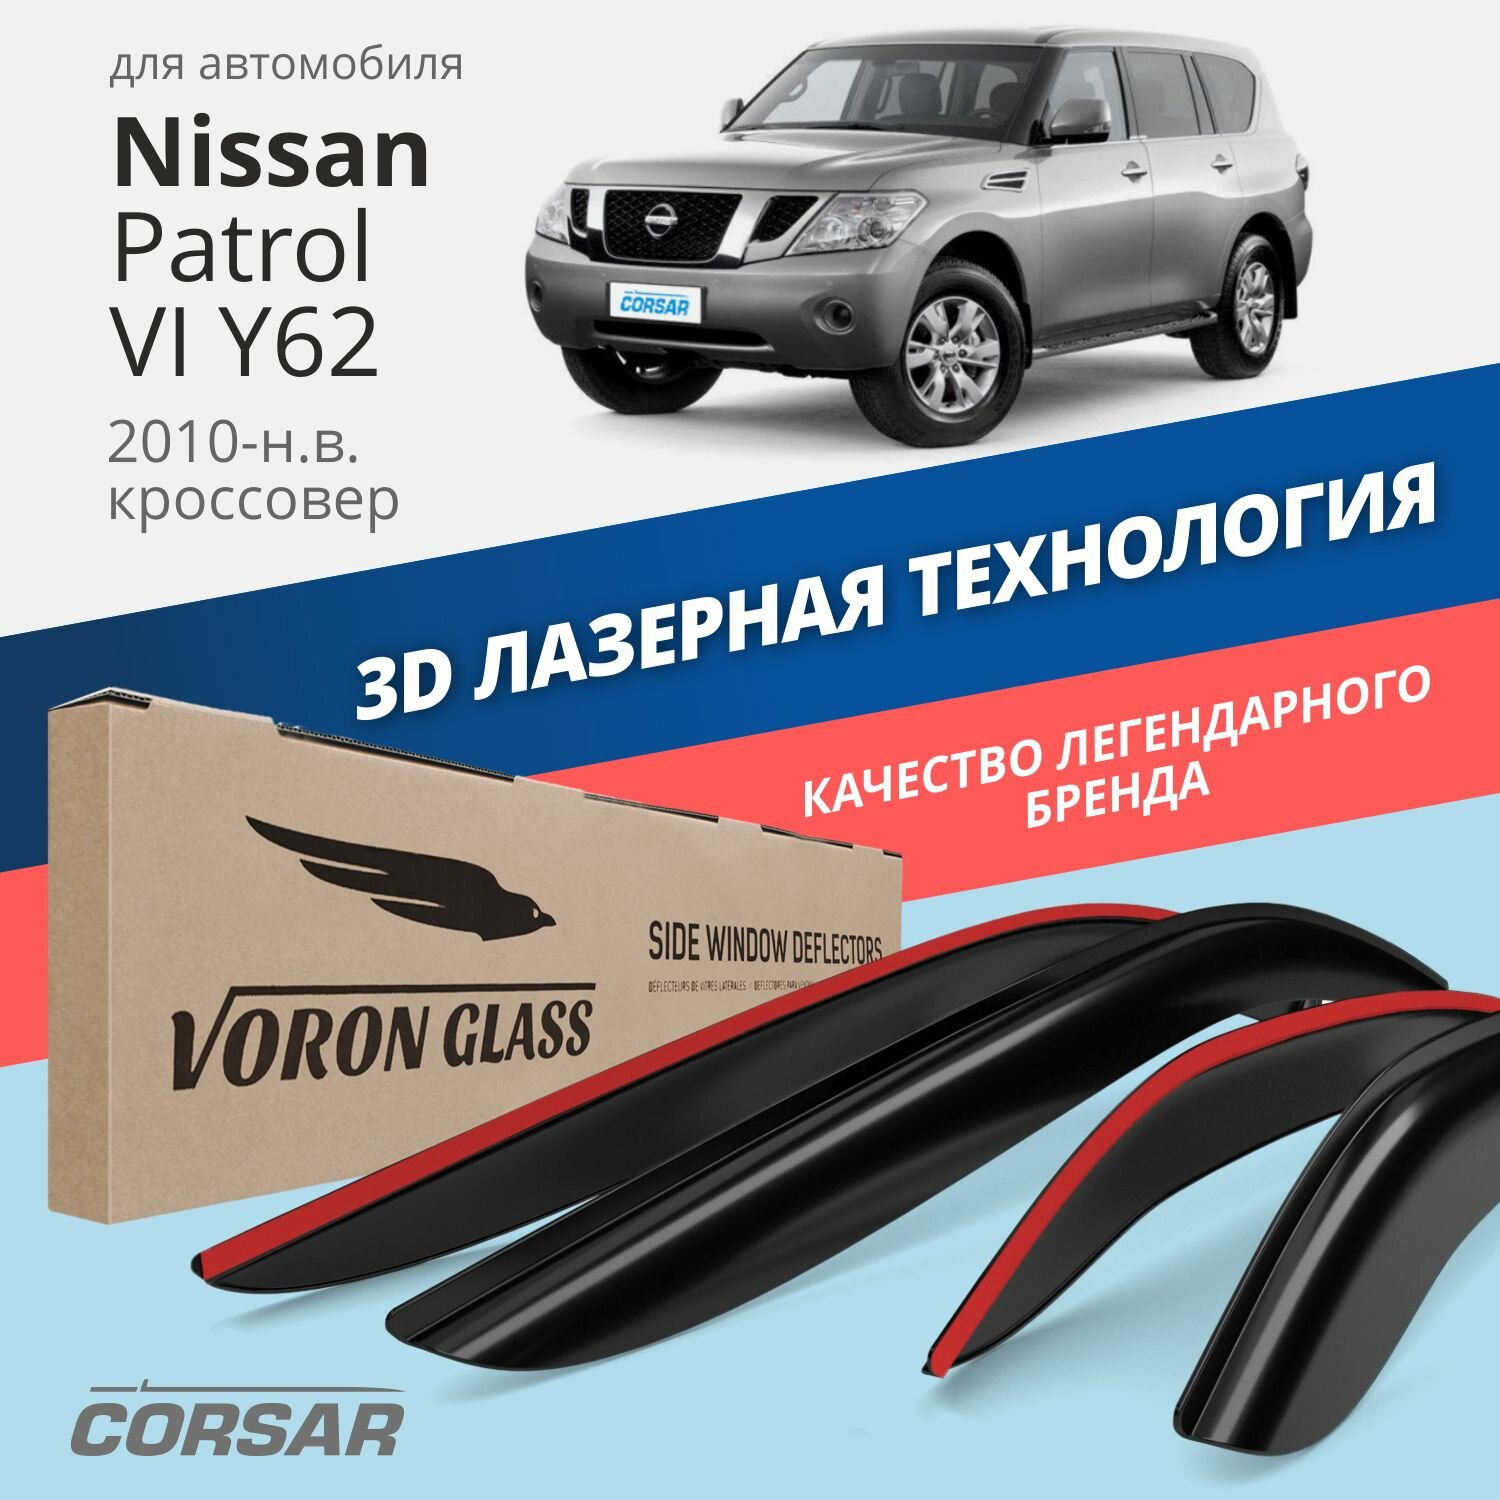 Дефлекторы окон Voron Glass серия Corsar для Nissan Patrol VI Y62 2010-н. в. накладные 4 шт.